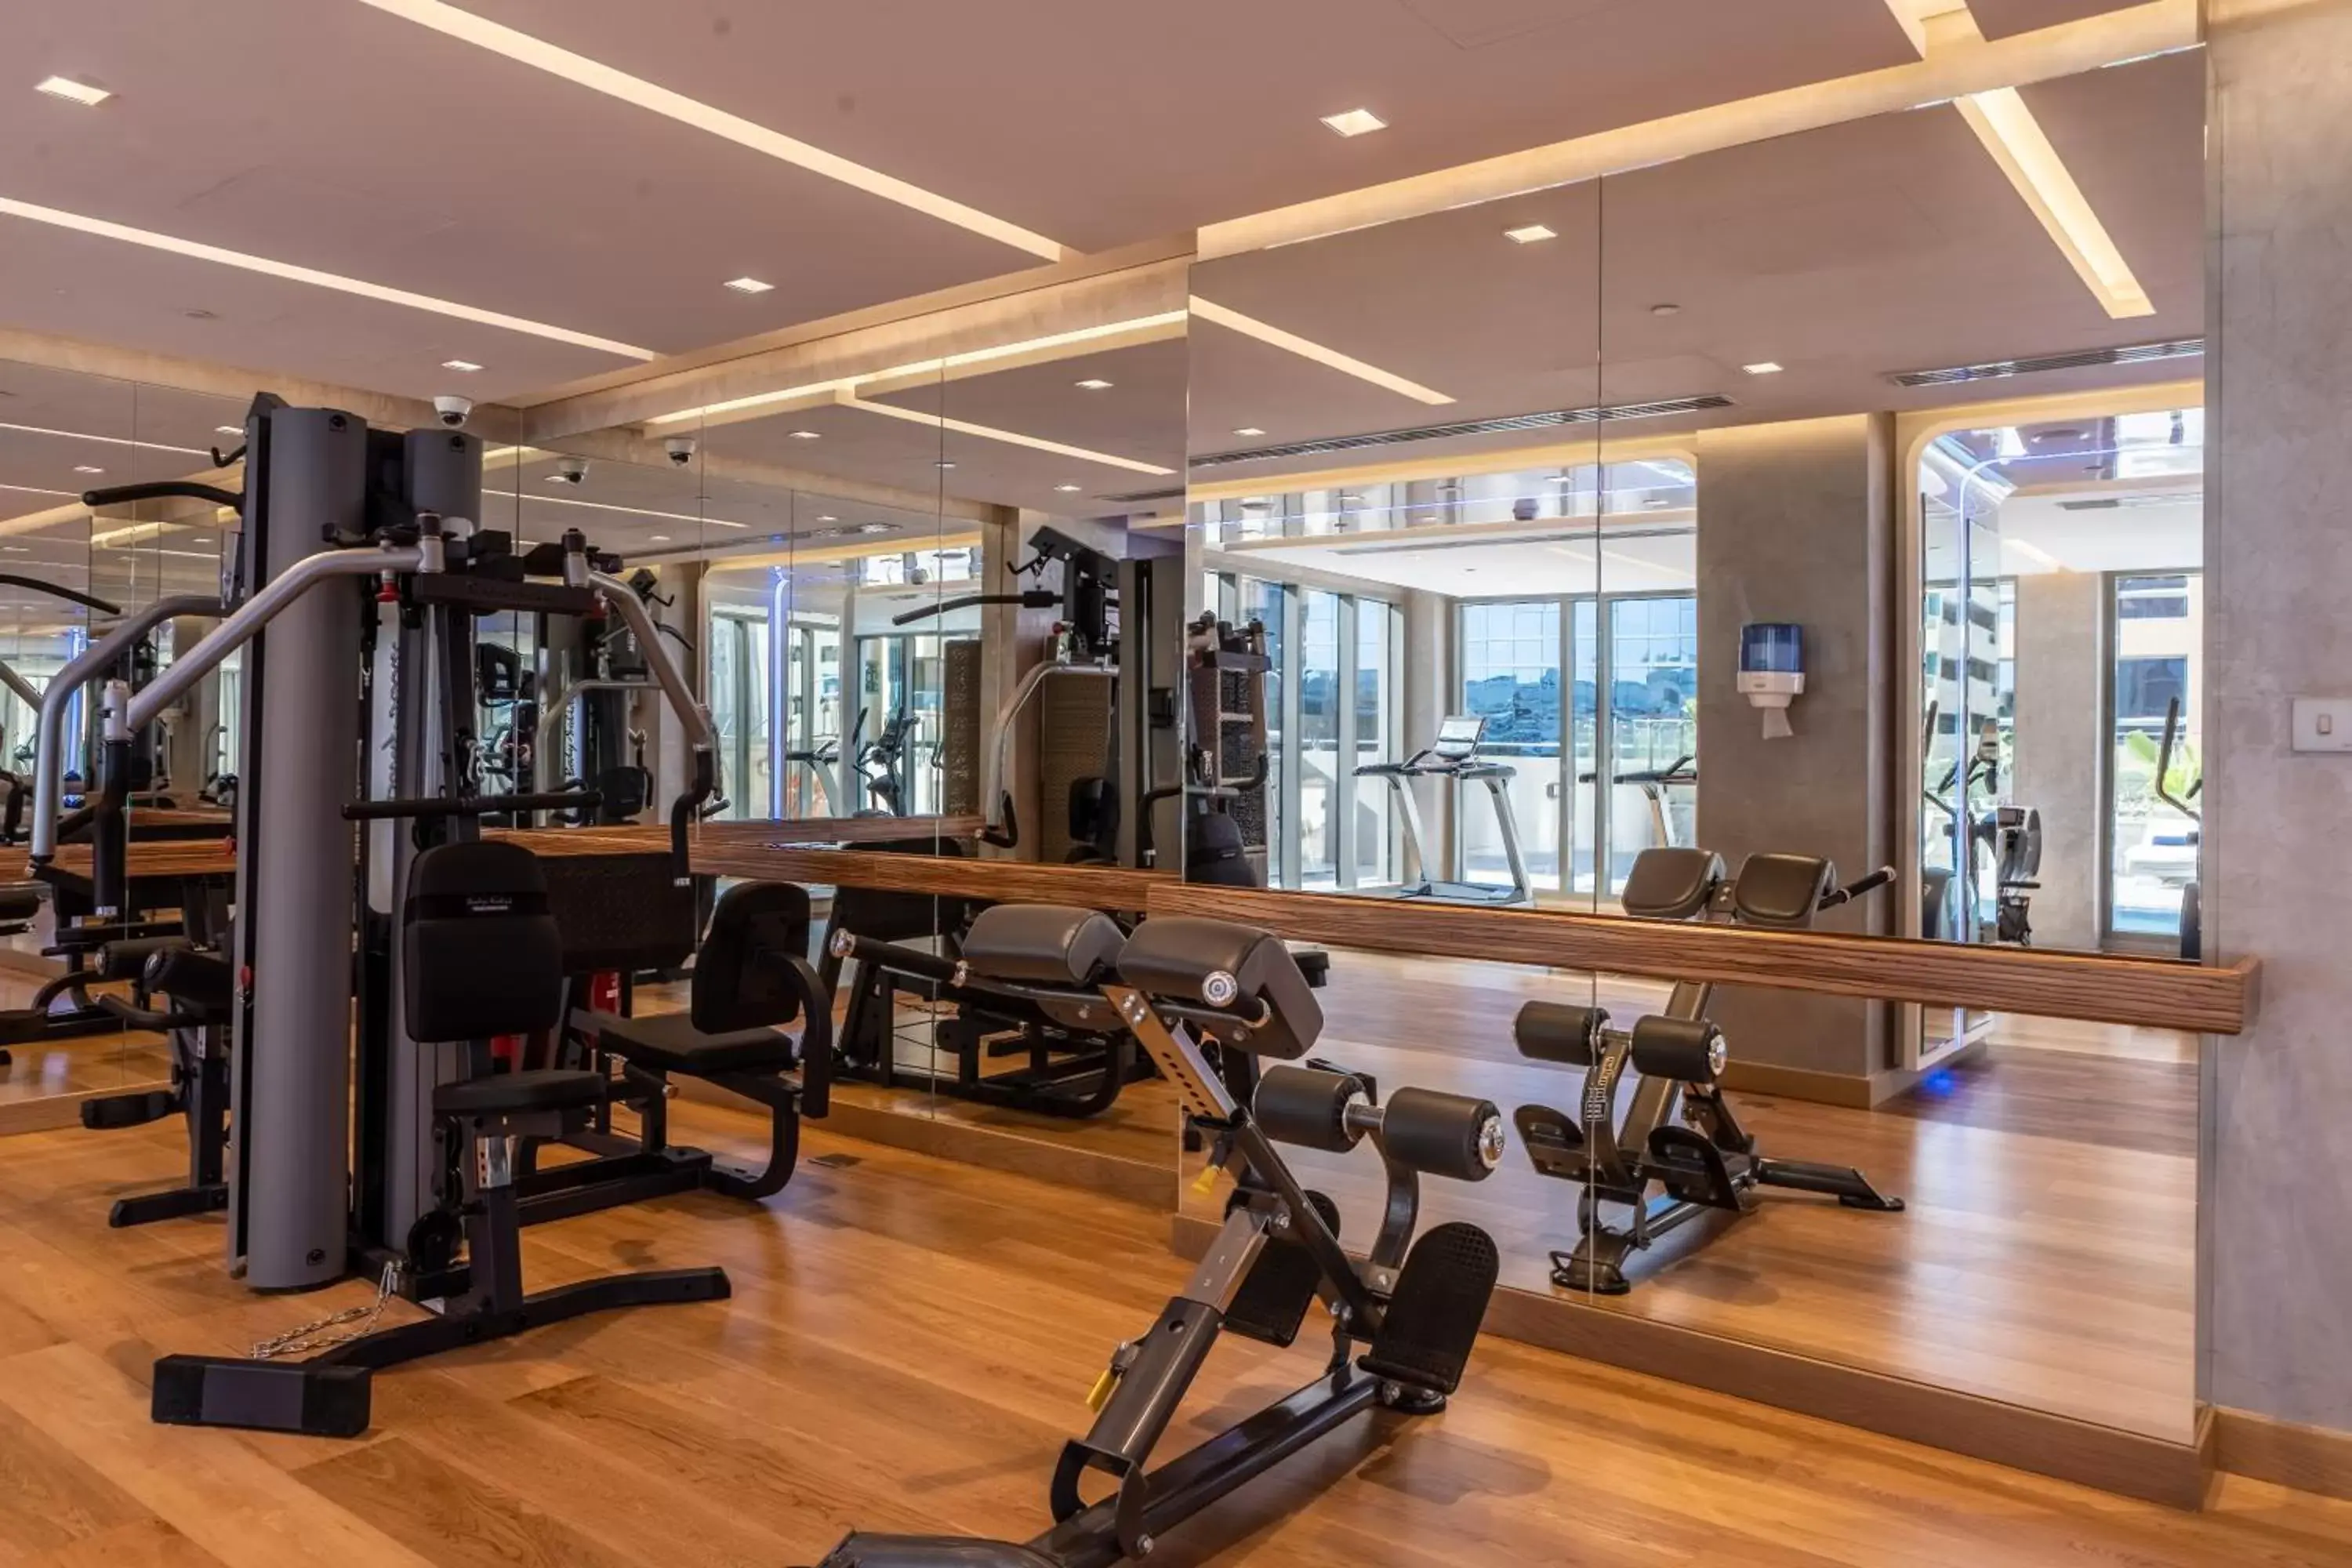 Fitness centre/facilities, Fitness Center/Facilities in Suha Mina Rashid Hotel Apartments